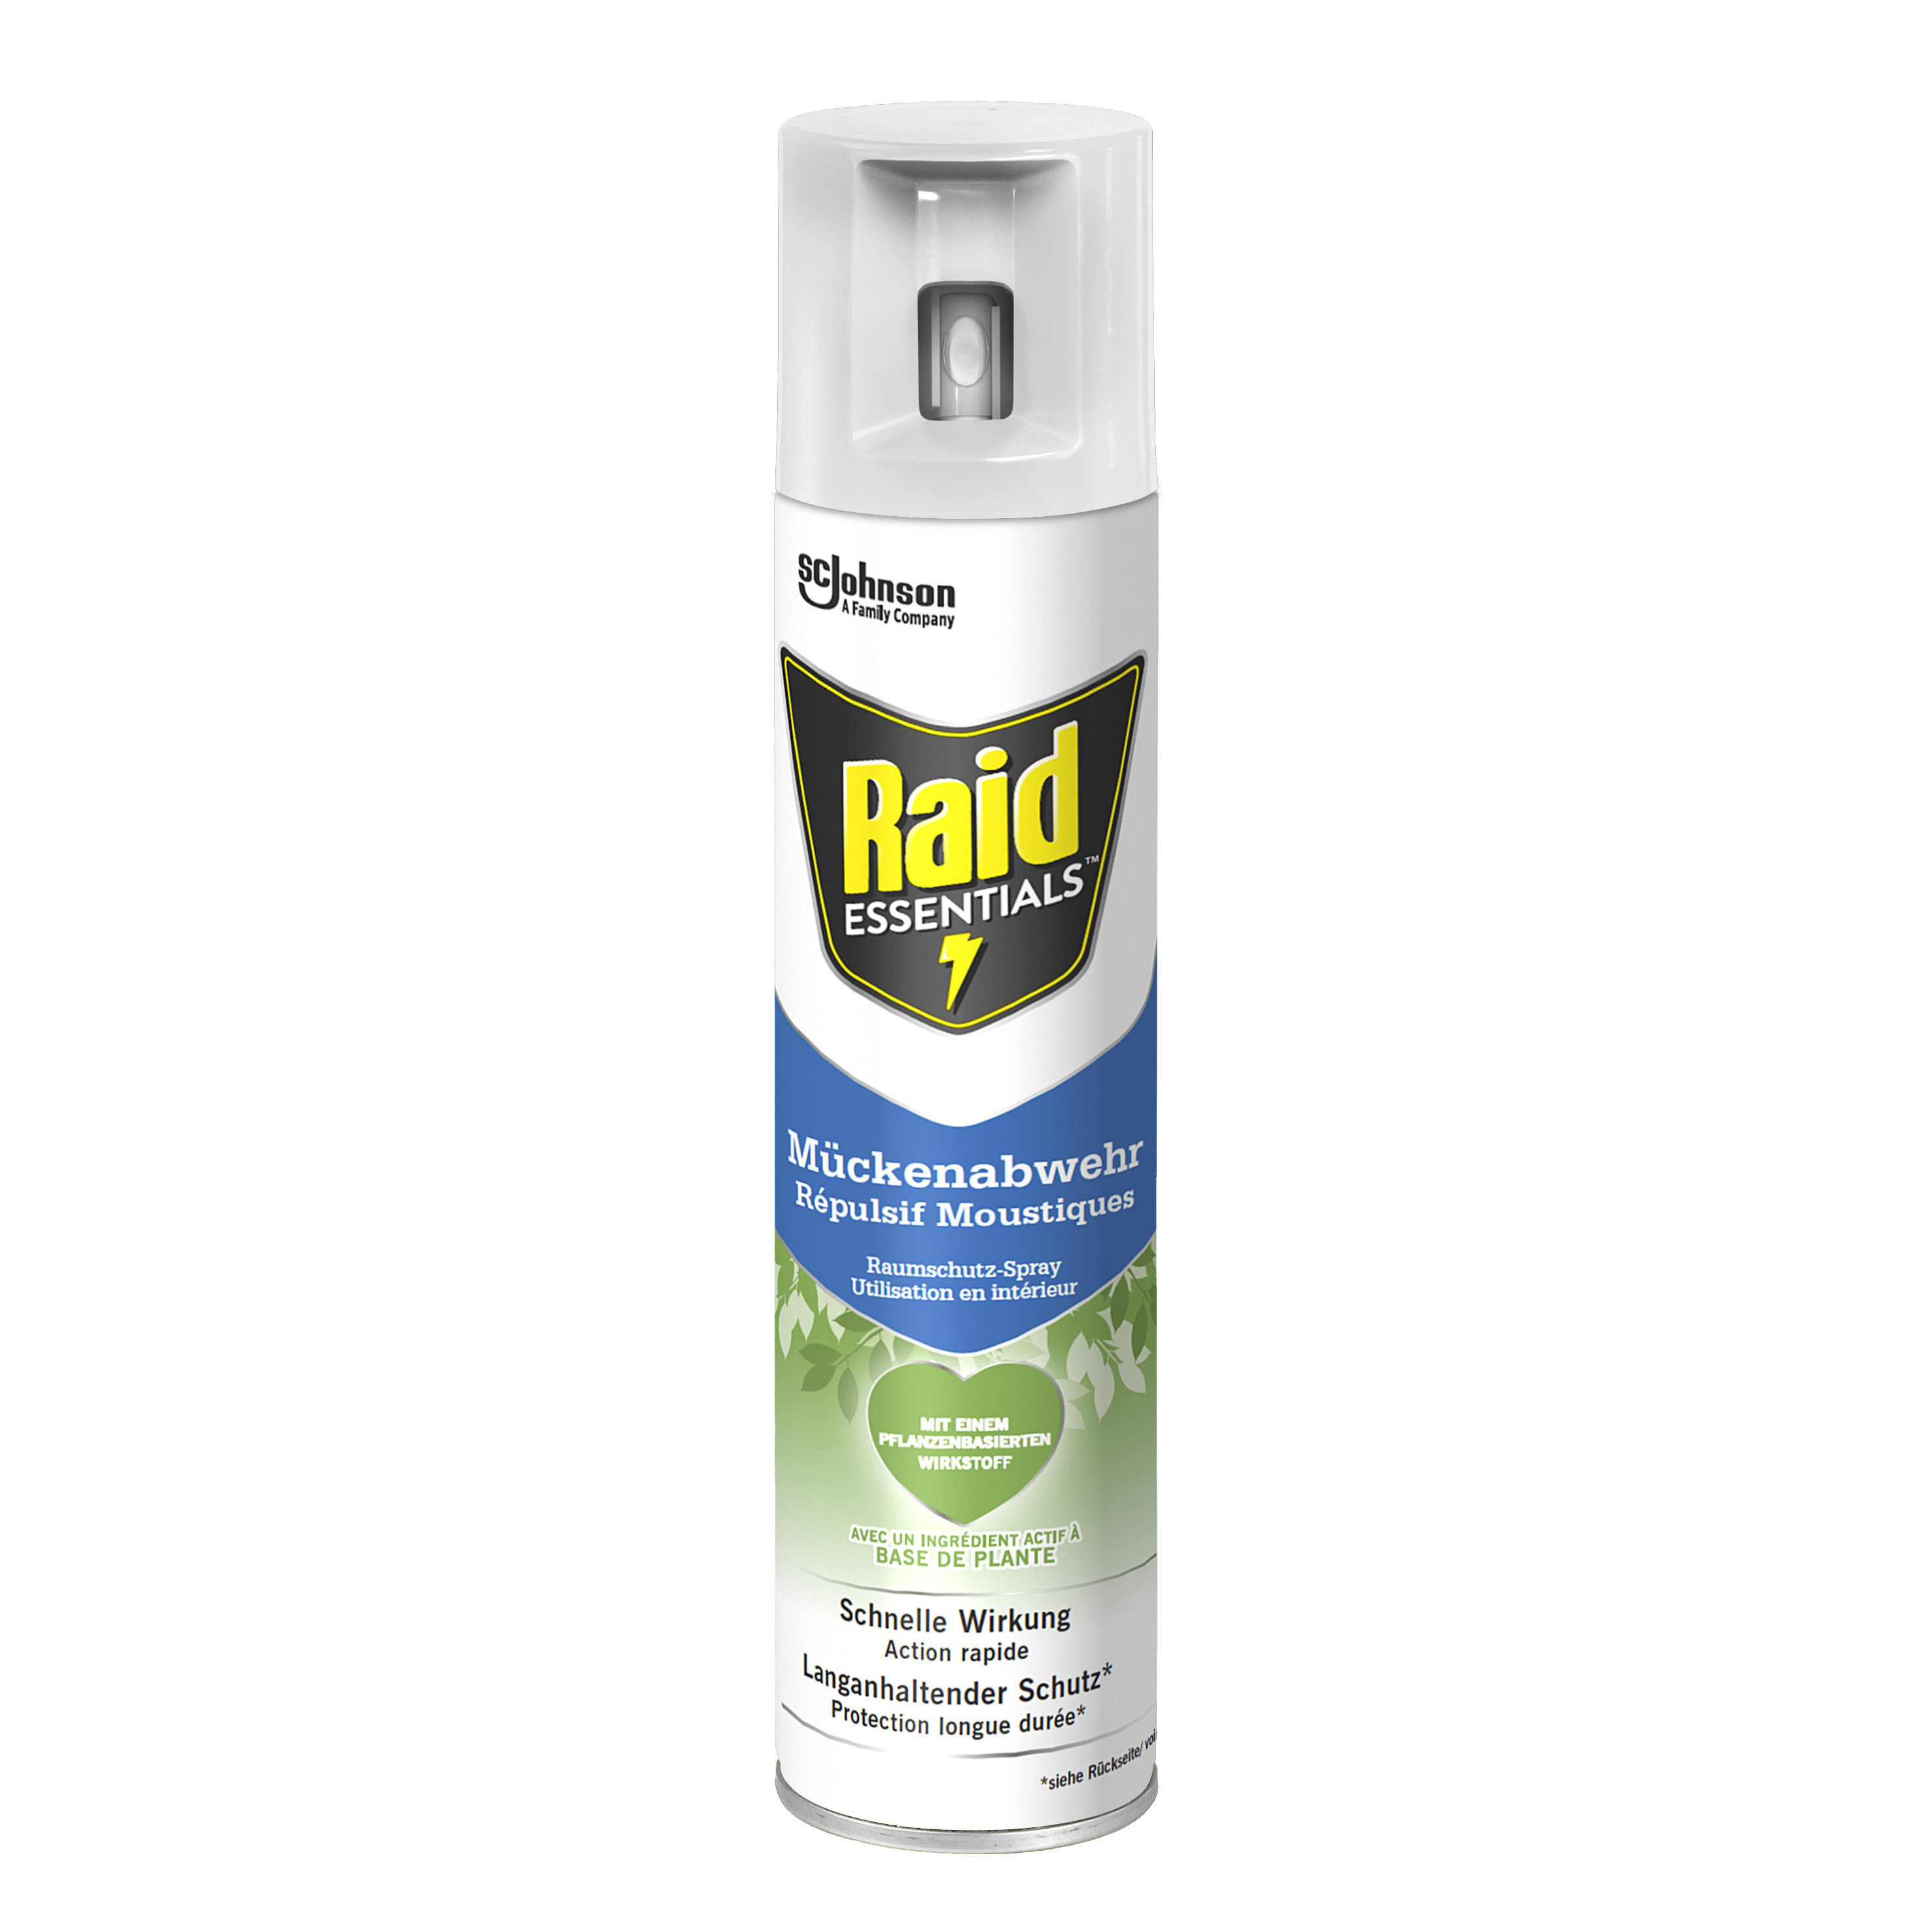 RAID Essentials spray répulsif anti moustiques 300ml pas cher 